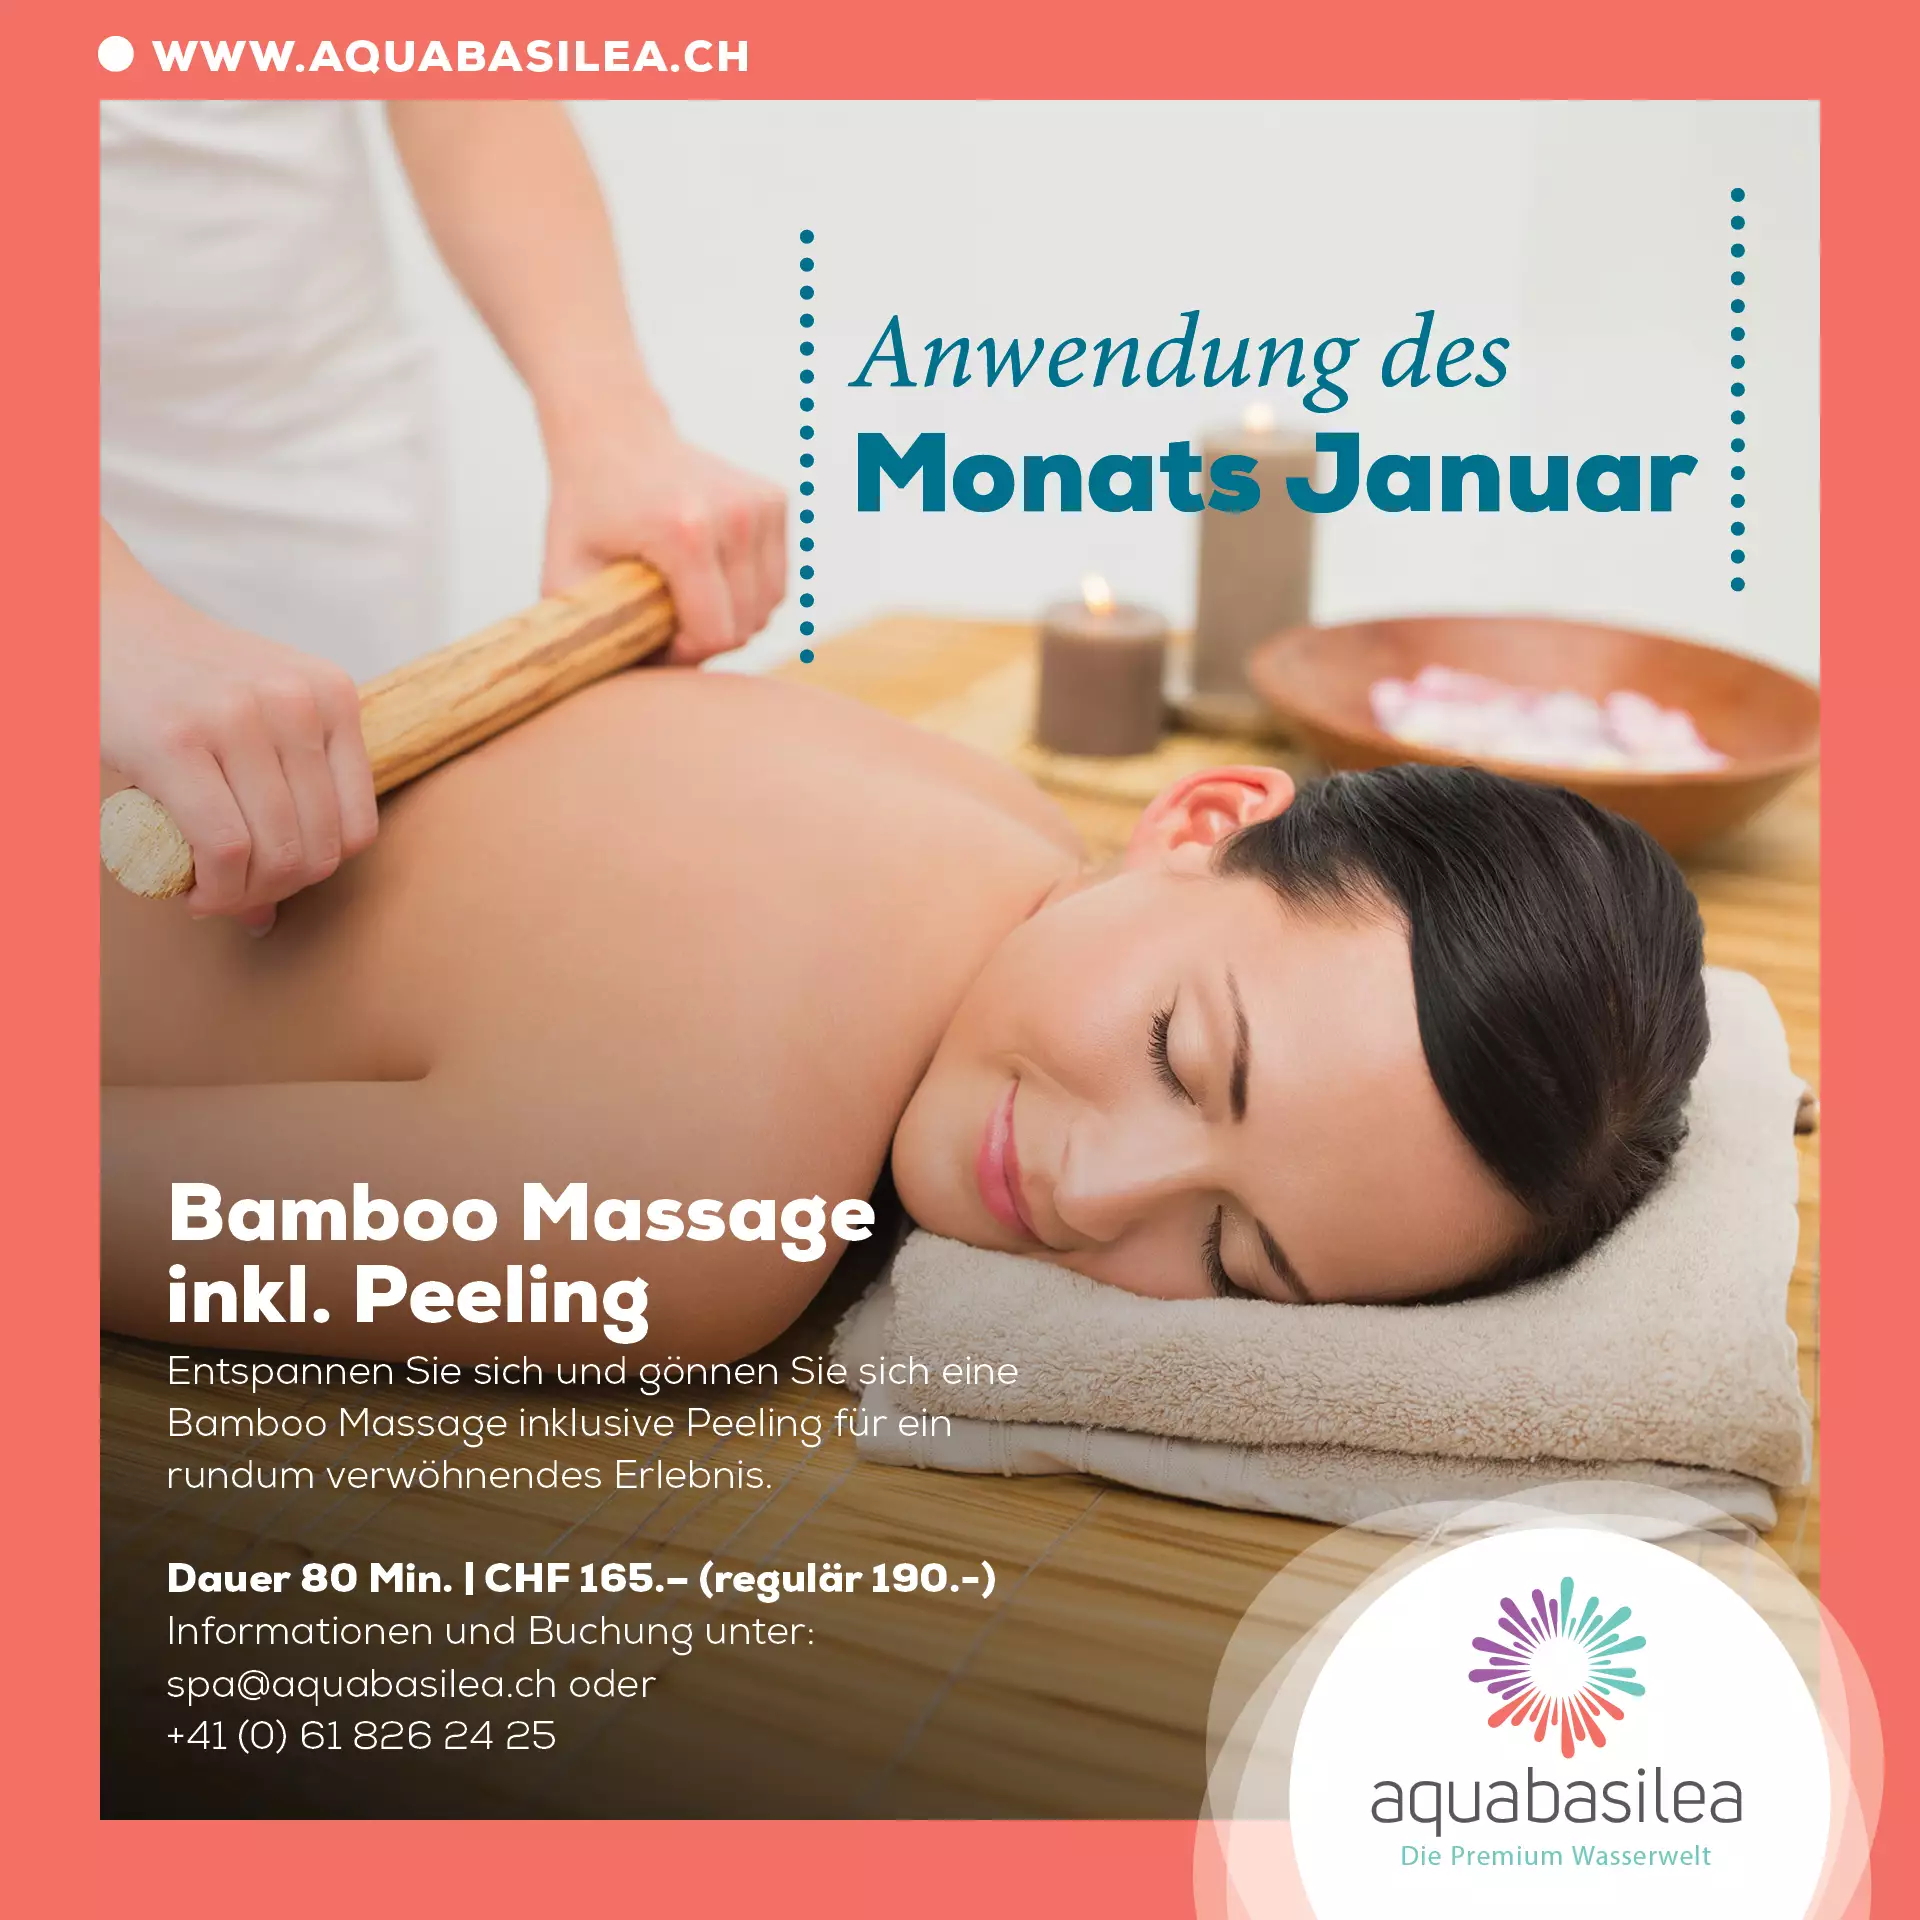 Anwendung des Monats im Januar - "Bamboo Massage inkl. Peeling"